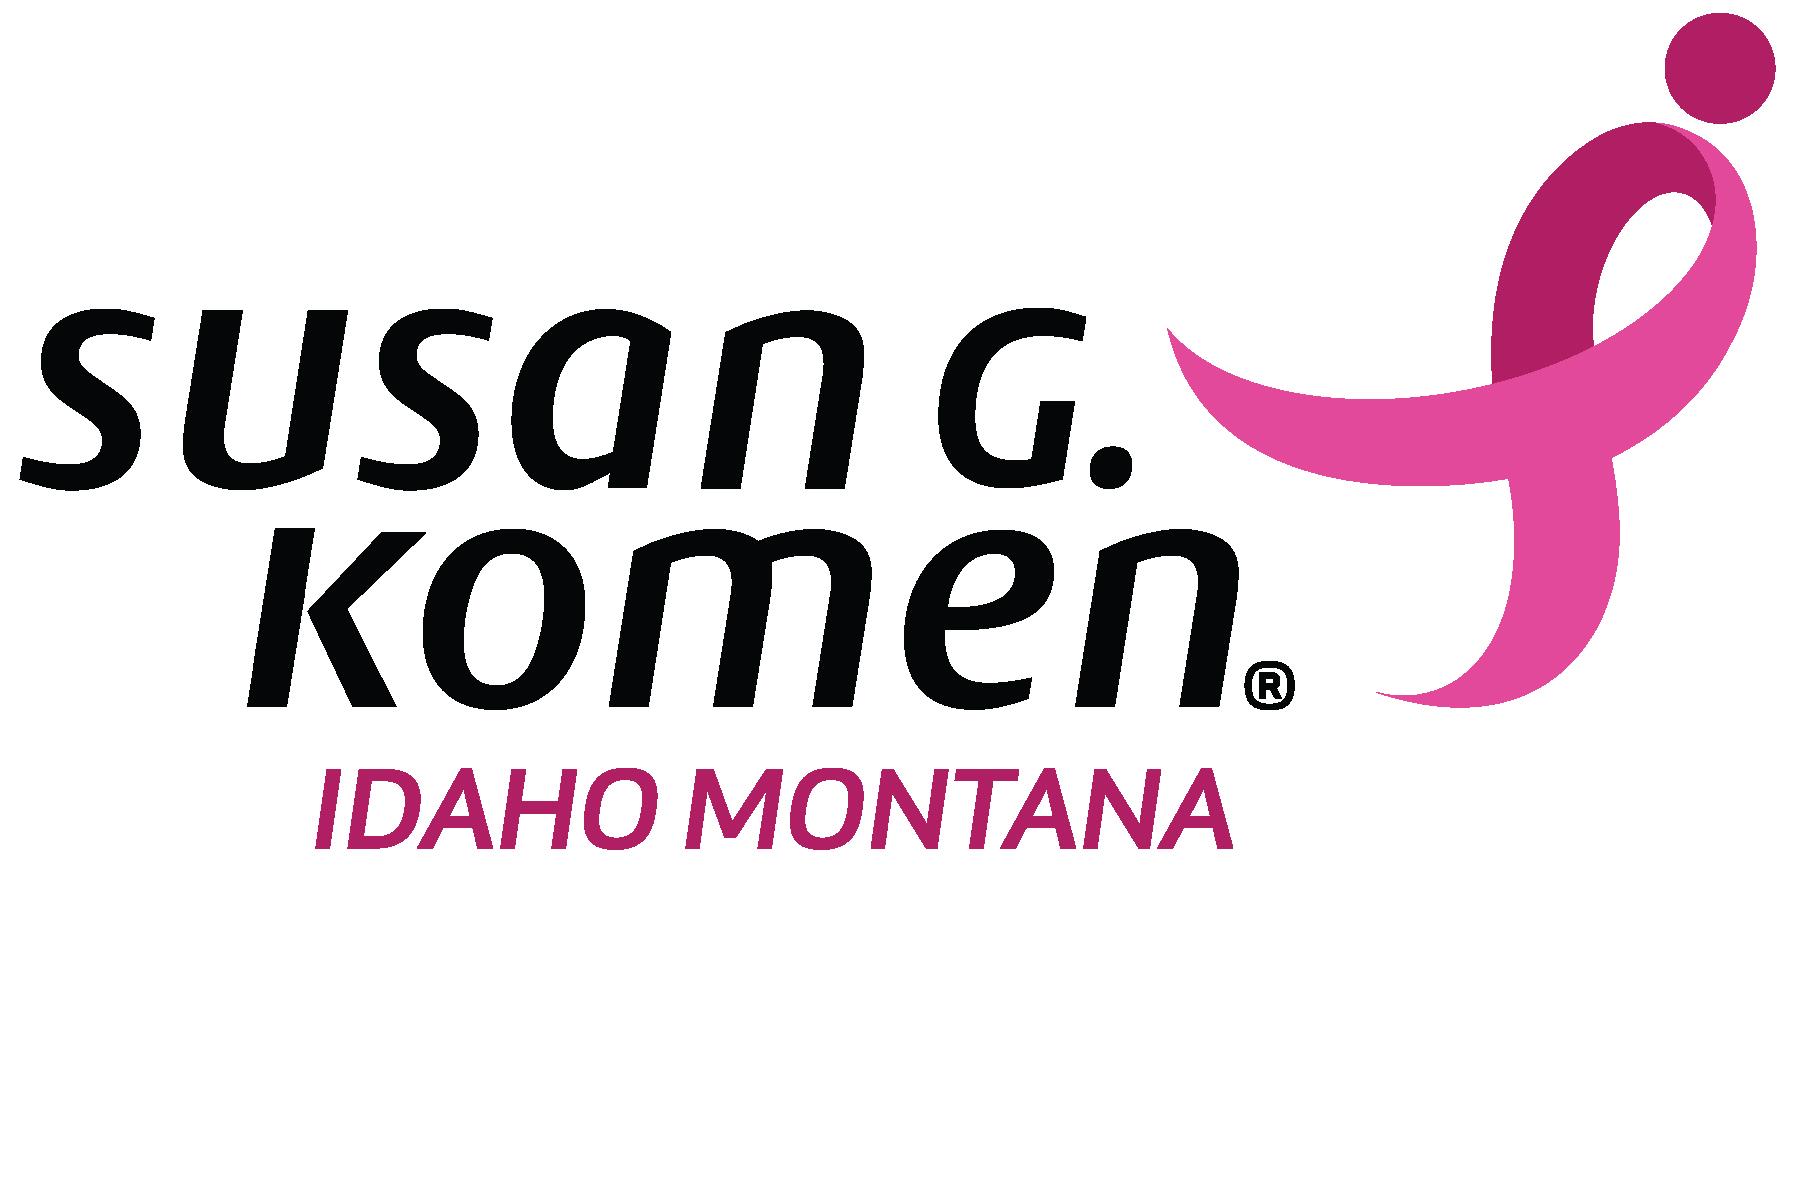 Susan G Komen logo Idaho Montana